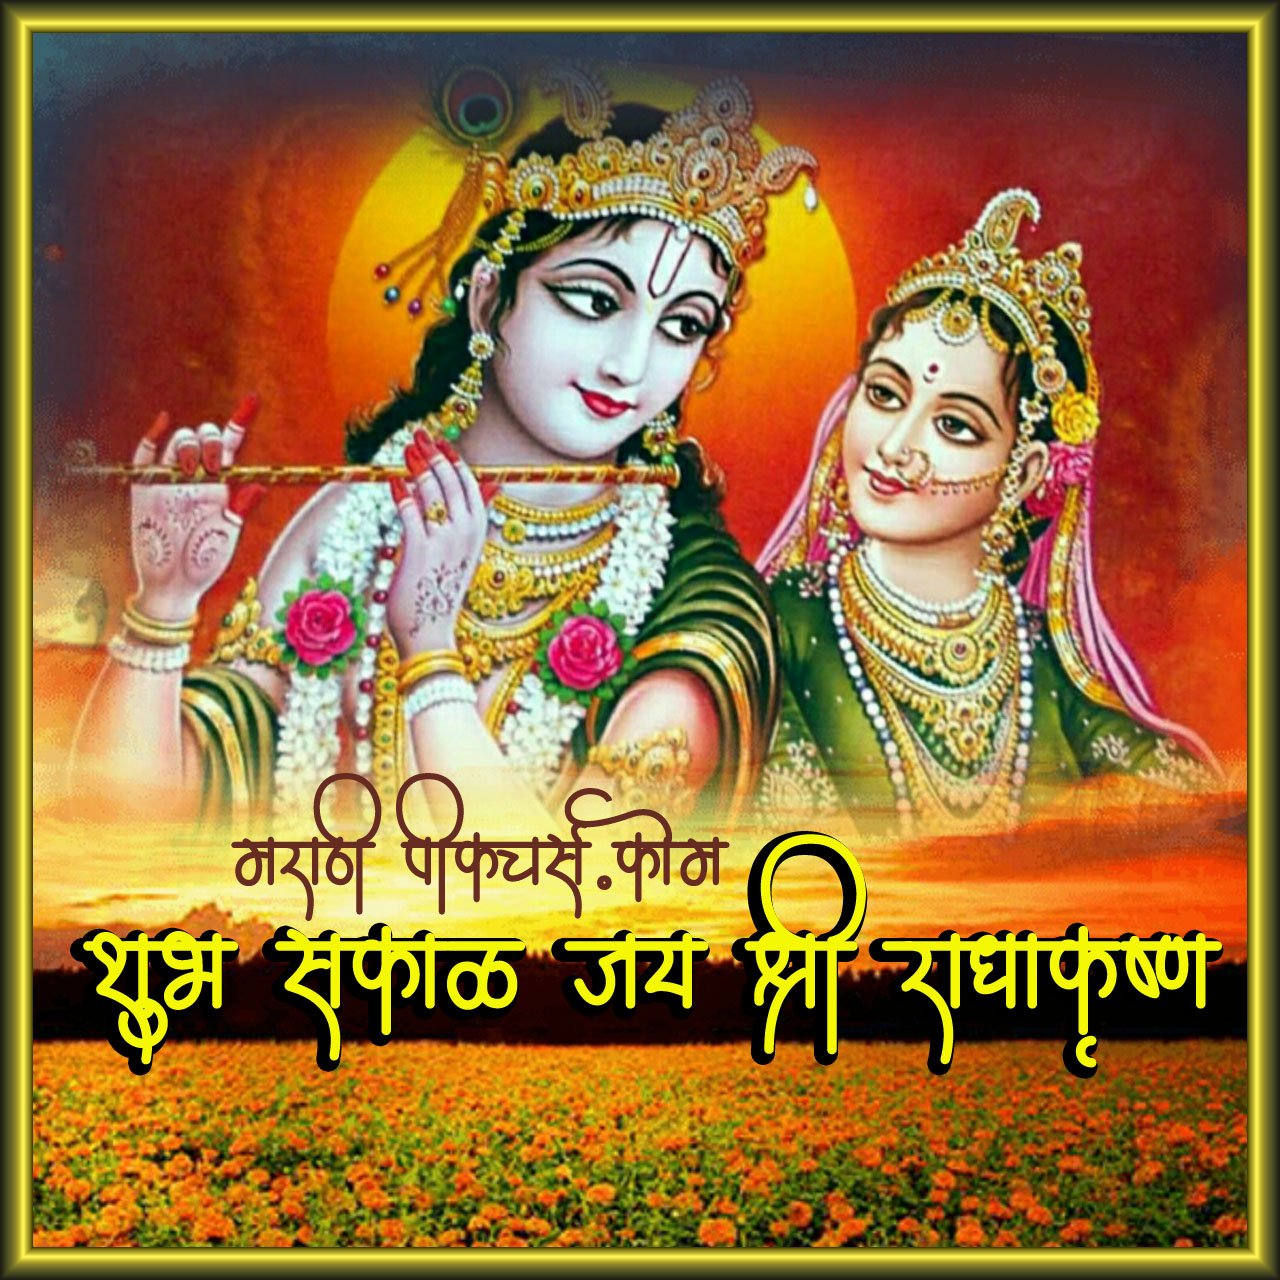 Shubh Sakal Jai Shri Radha Krishna - MarathiPictures.com